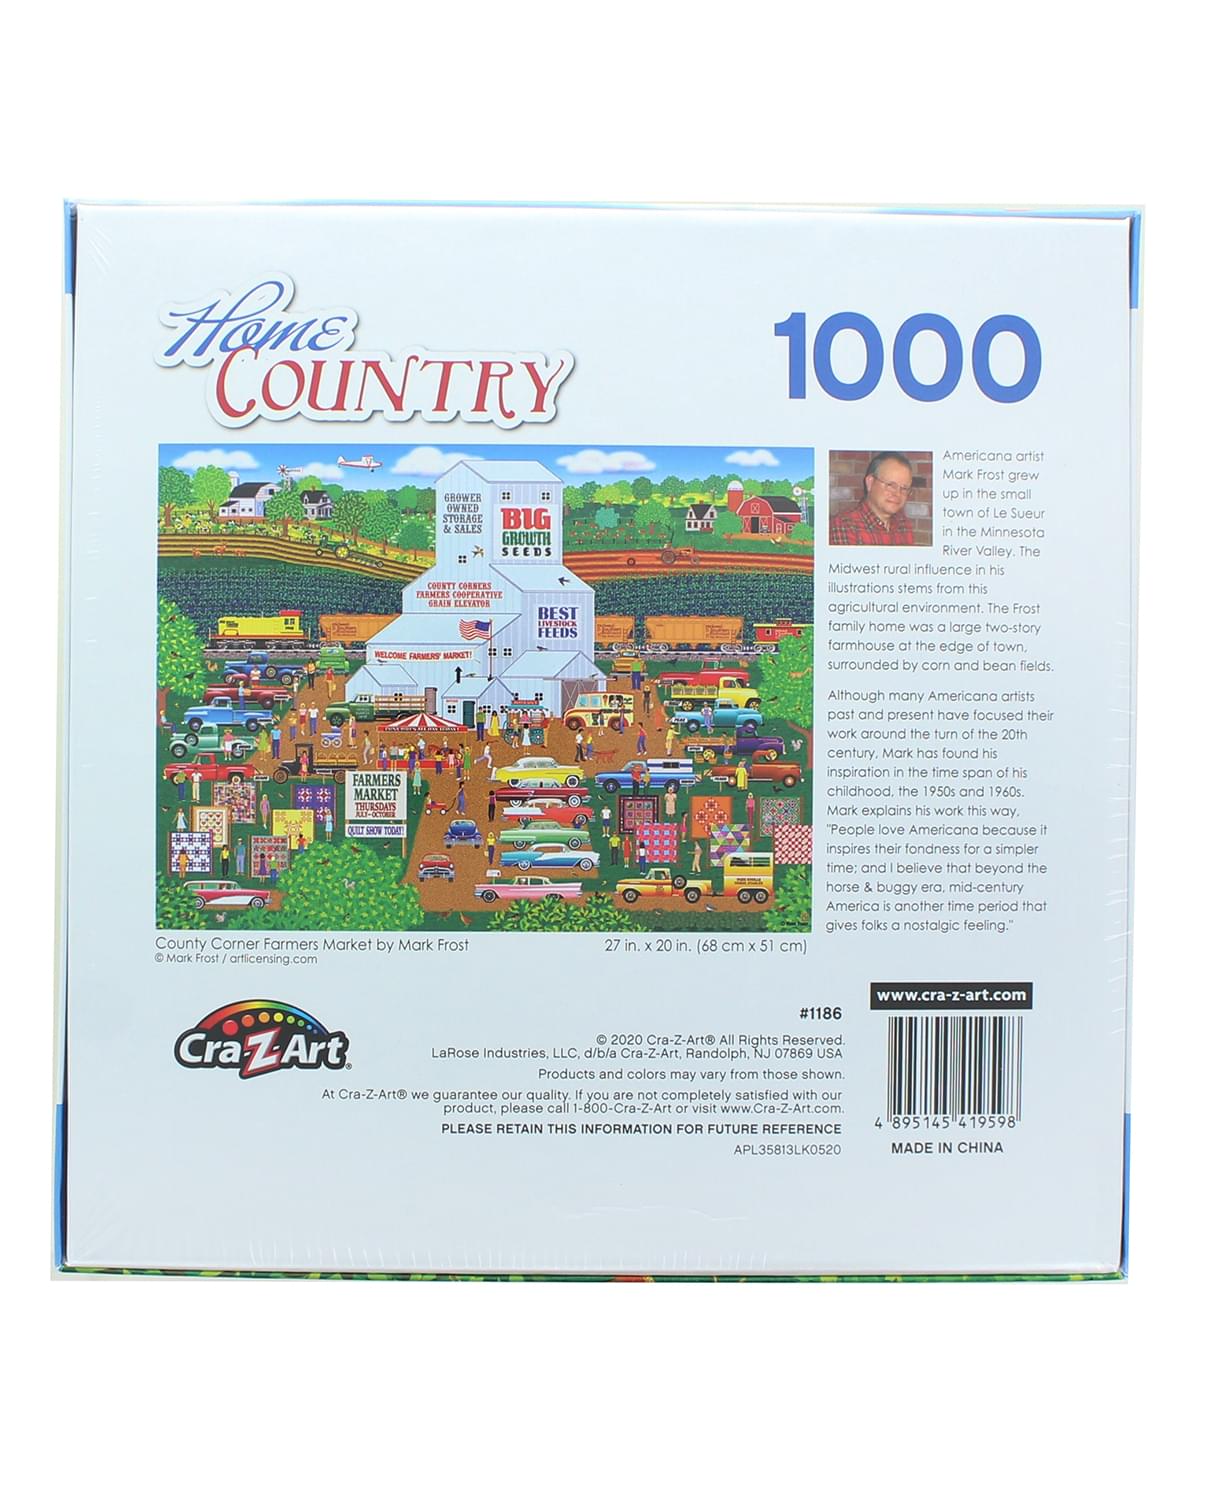 County Corner Farmers Market 1000 Piece Jigsaw Puzzle